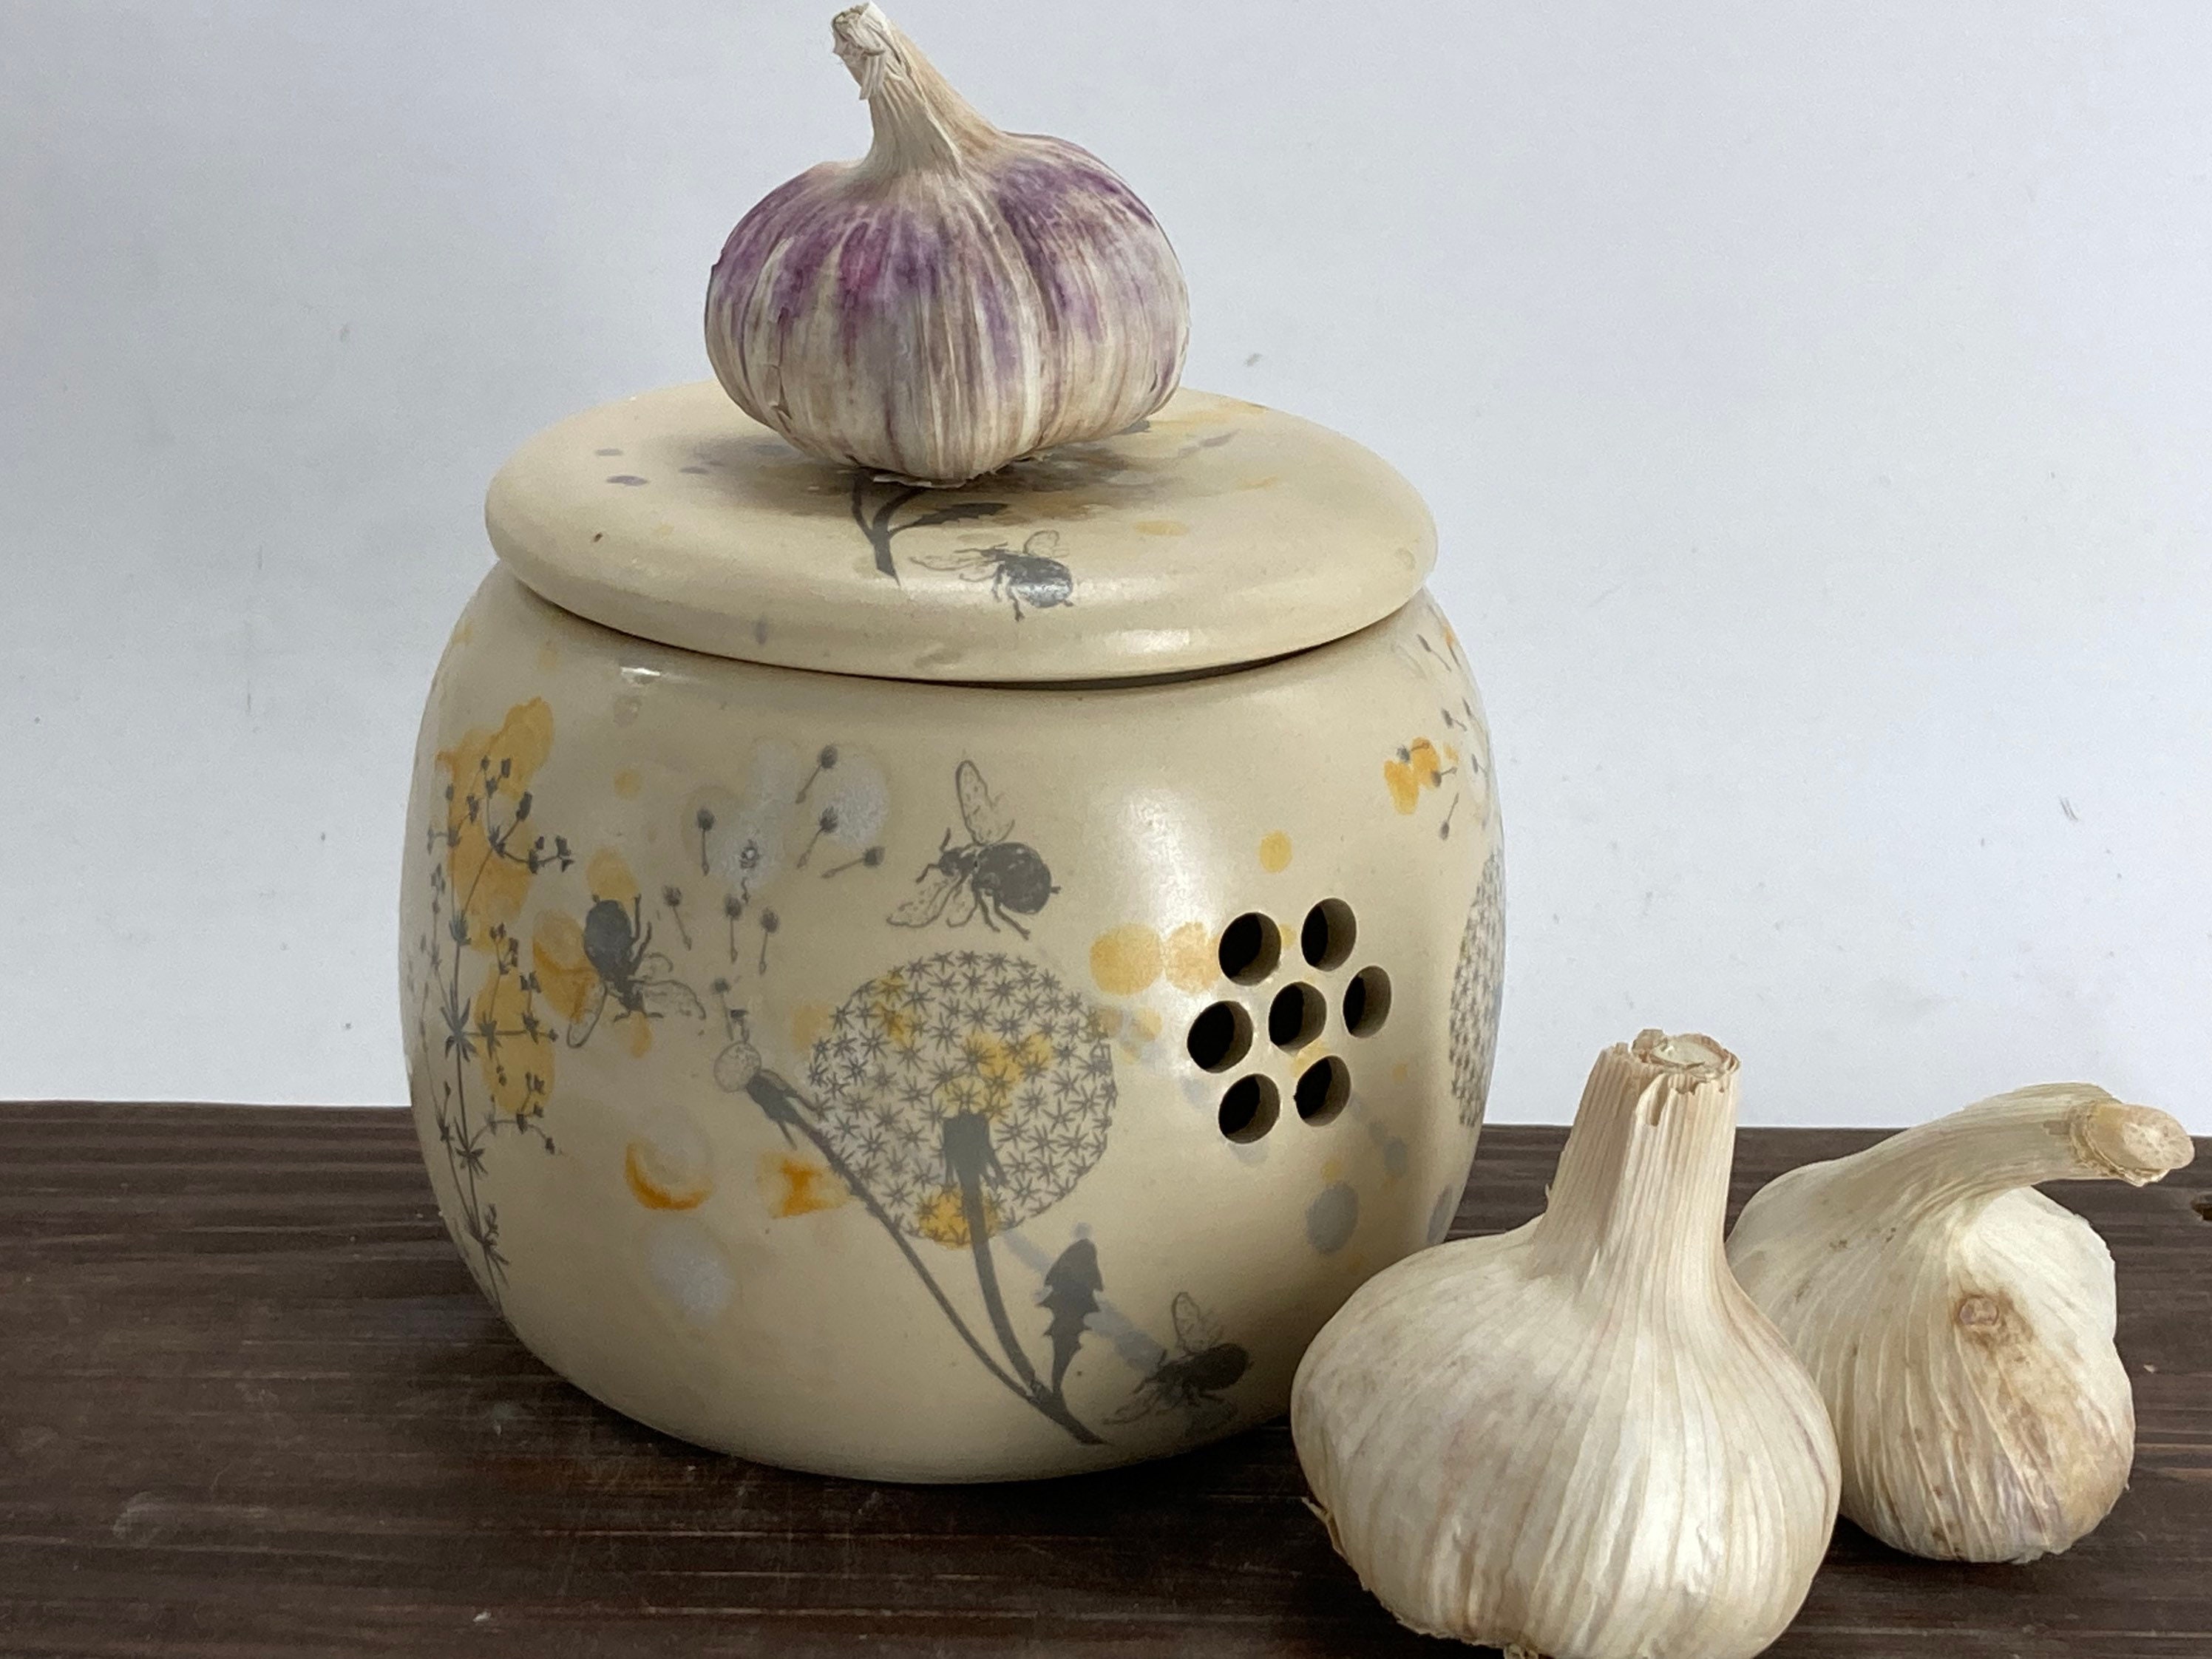 Conserva - Ceramic Onion Container 1 item